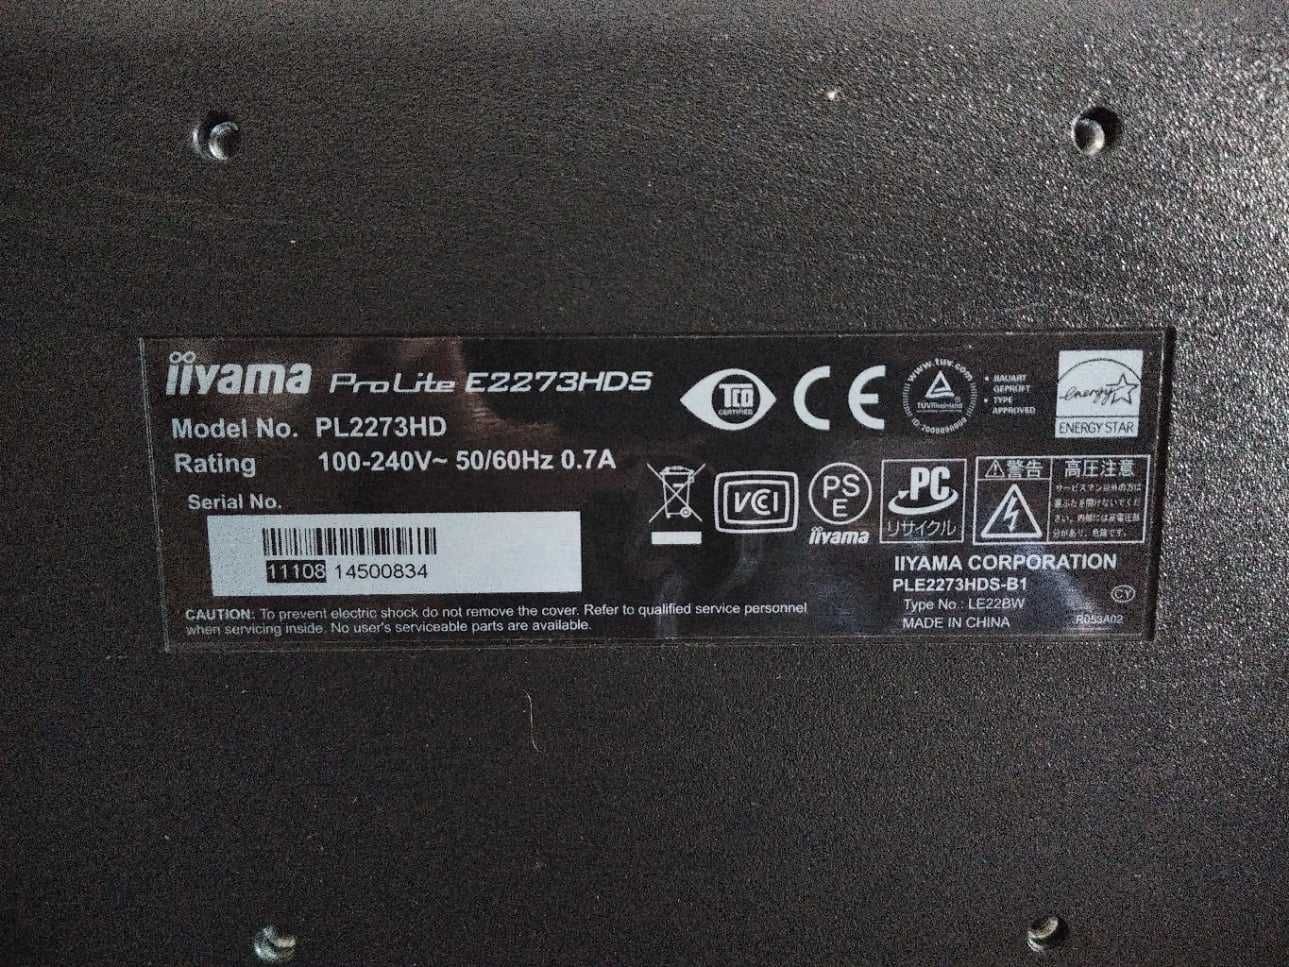 Monitor 22" Iiyama ProLite E2283HDS